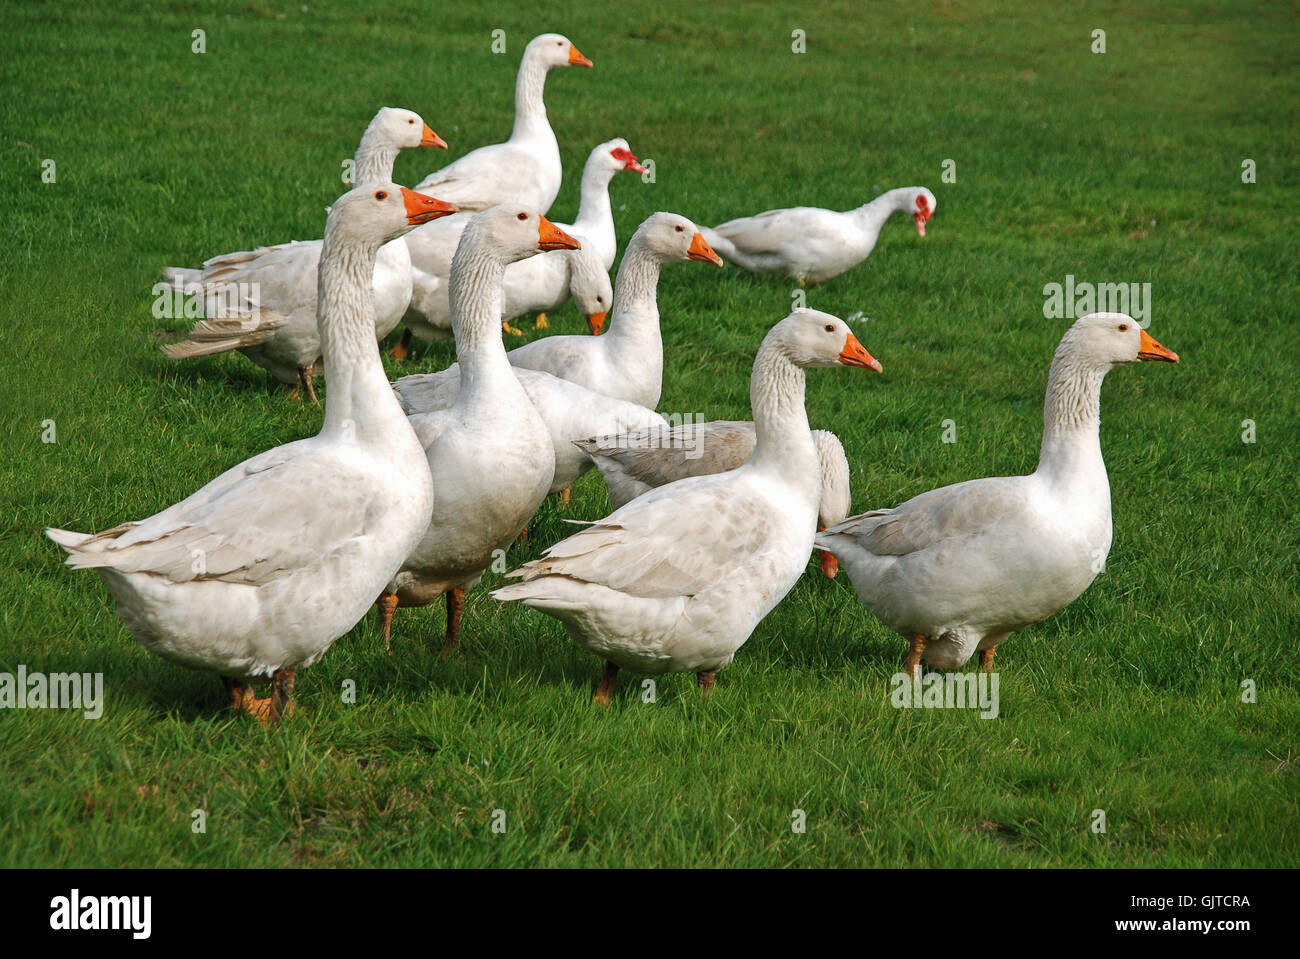 freewheeling geese Stock Photo